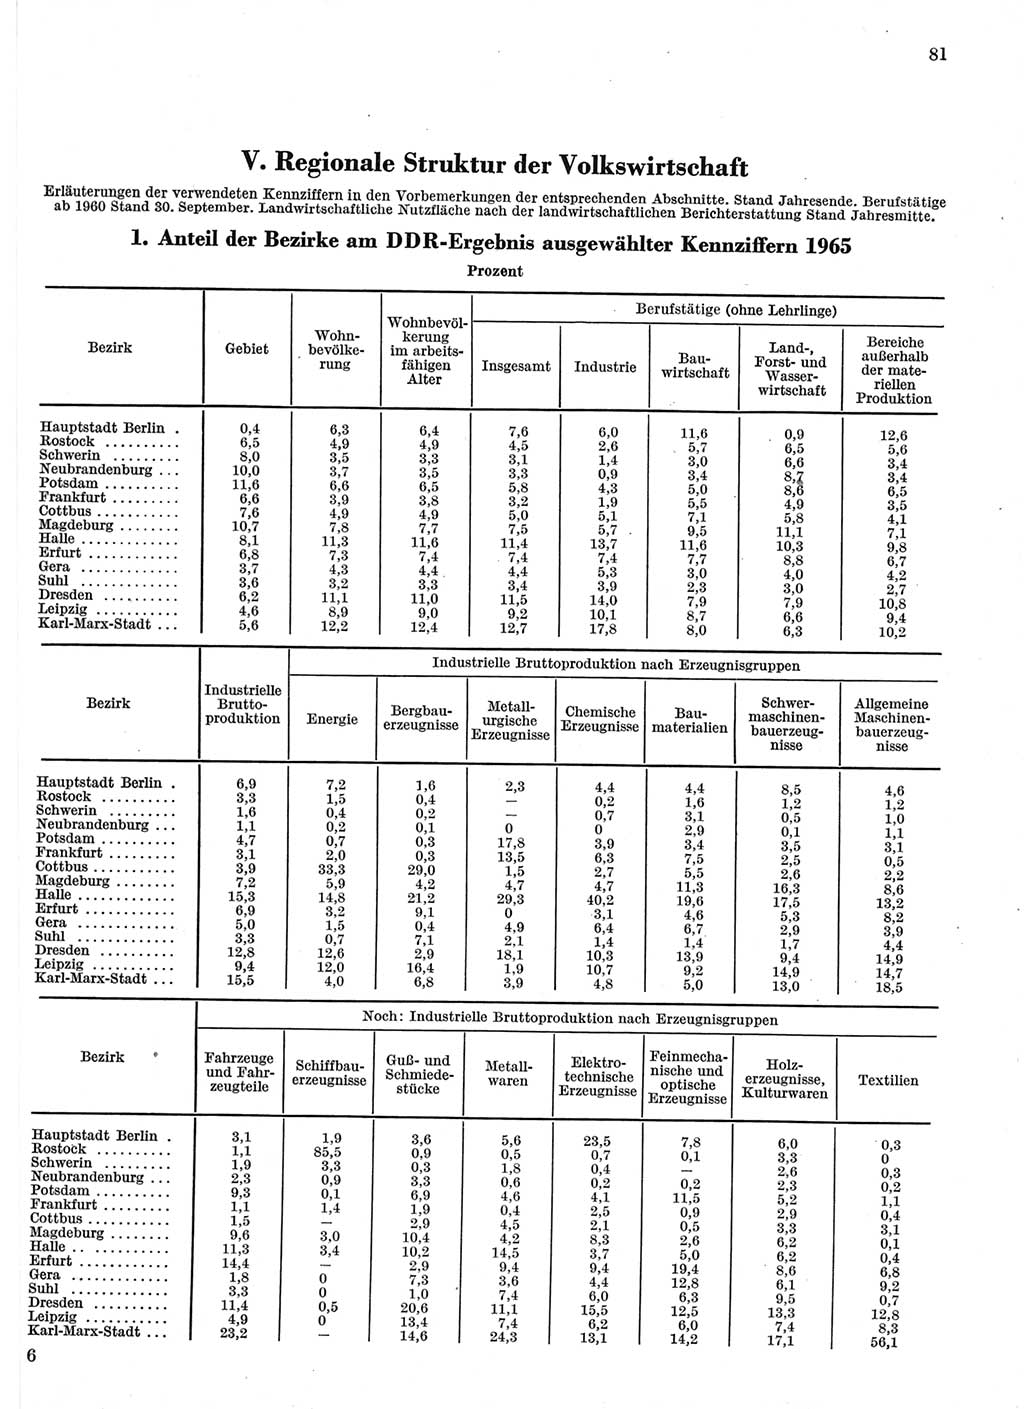 Statistisches Jahrbuch der Deutschen Demokratischen Republik (DDR) 1966, Seite 81 (Stat. Jb. DDR 1966, S. 81)